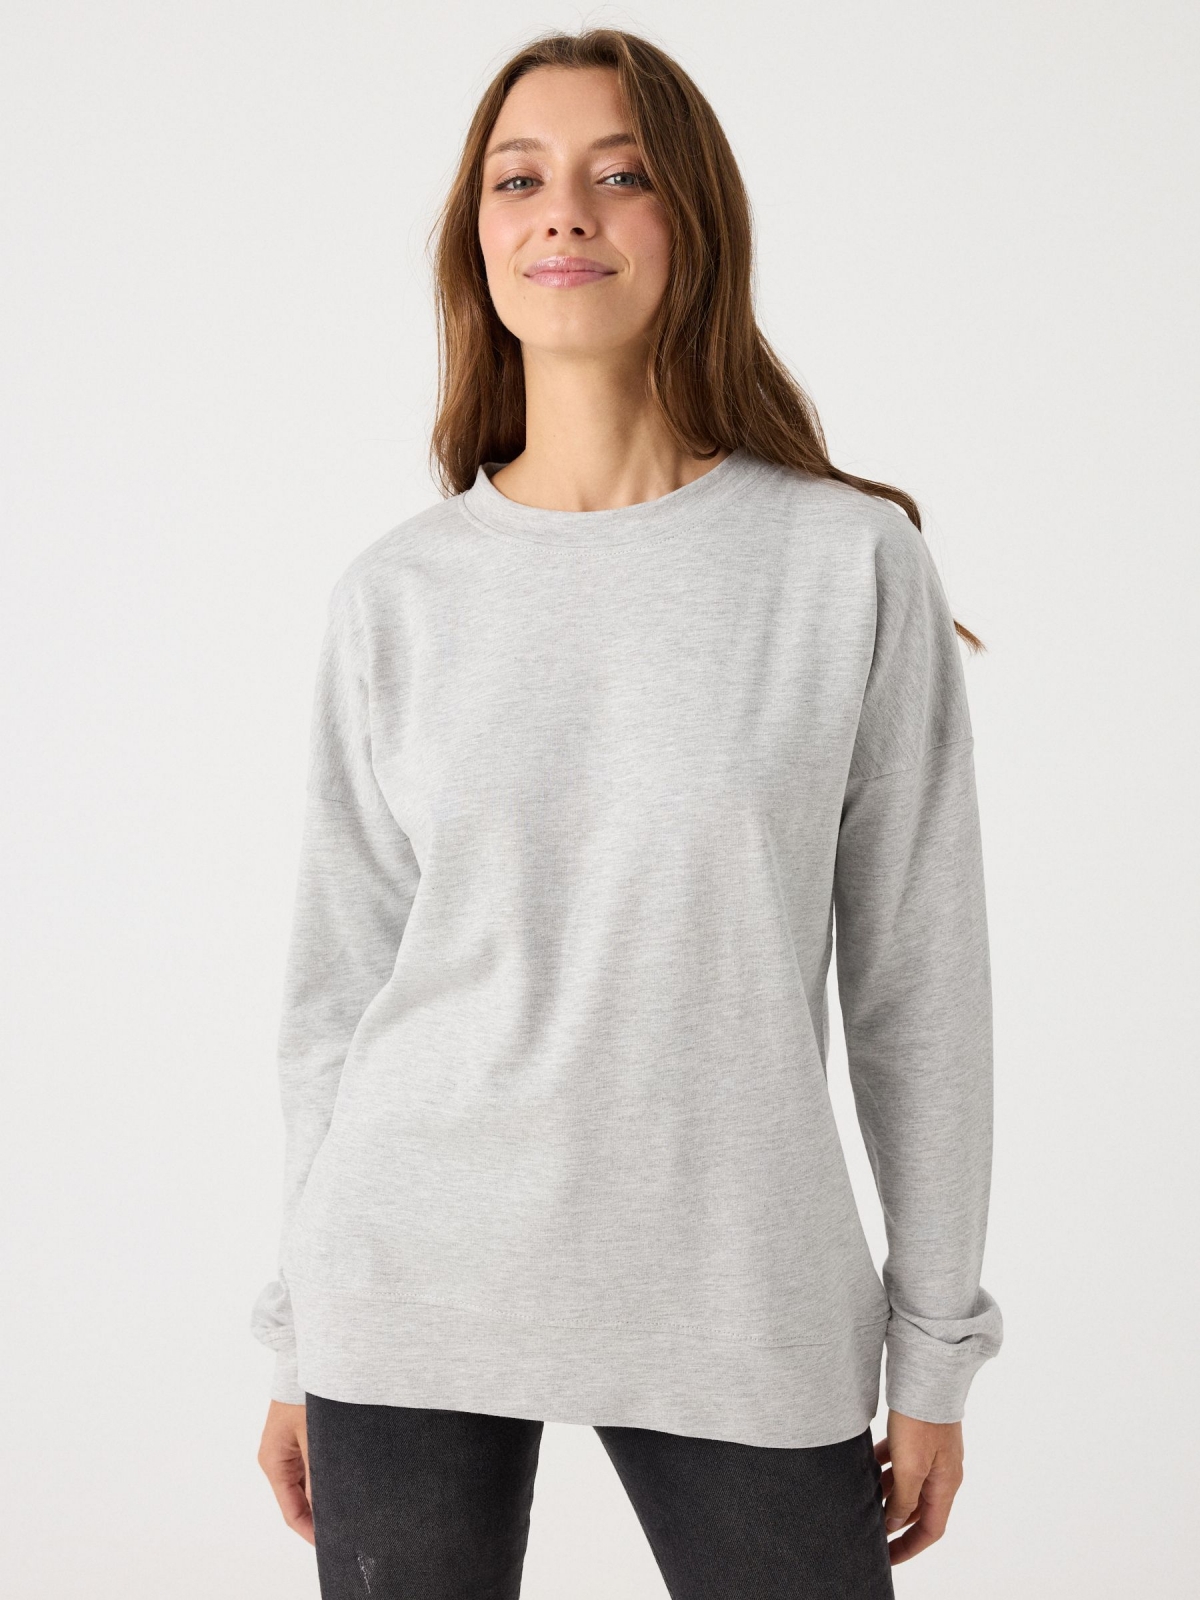 Sweatshirt básica cinza vista meia frontal